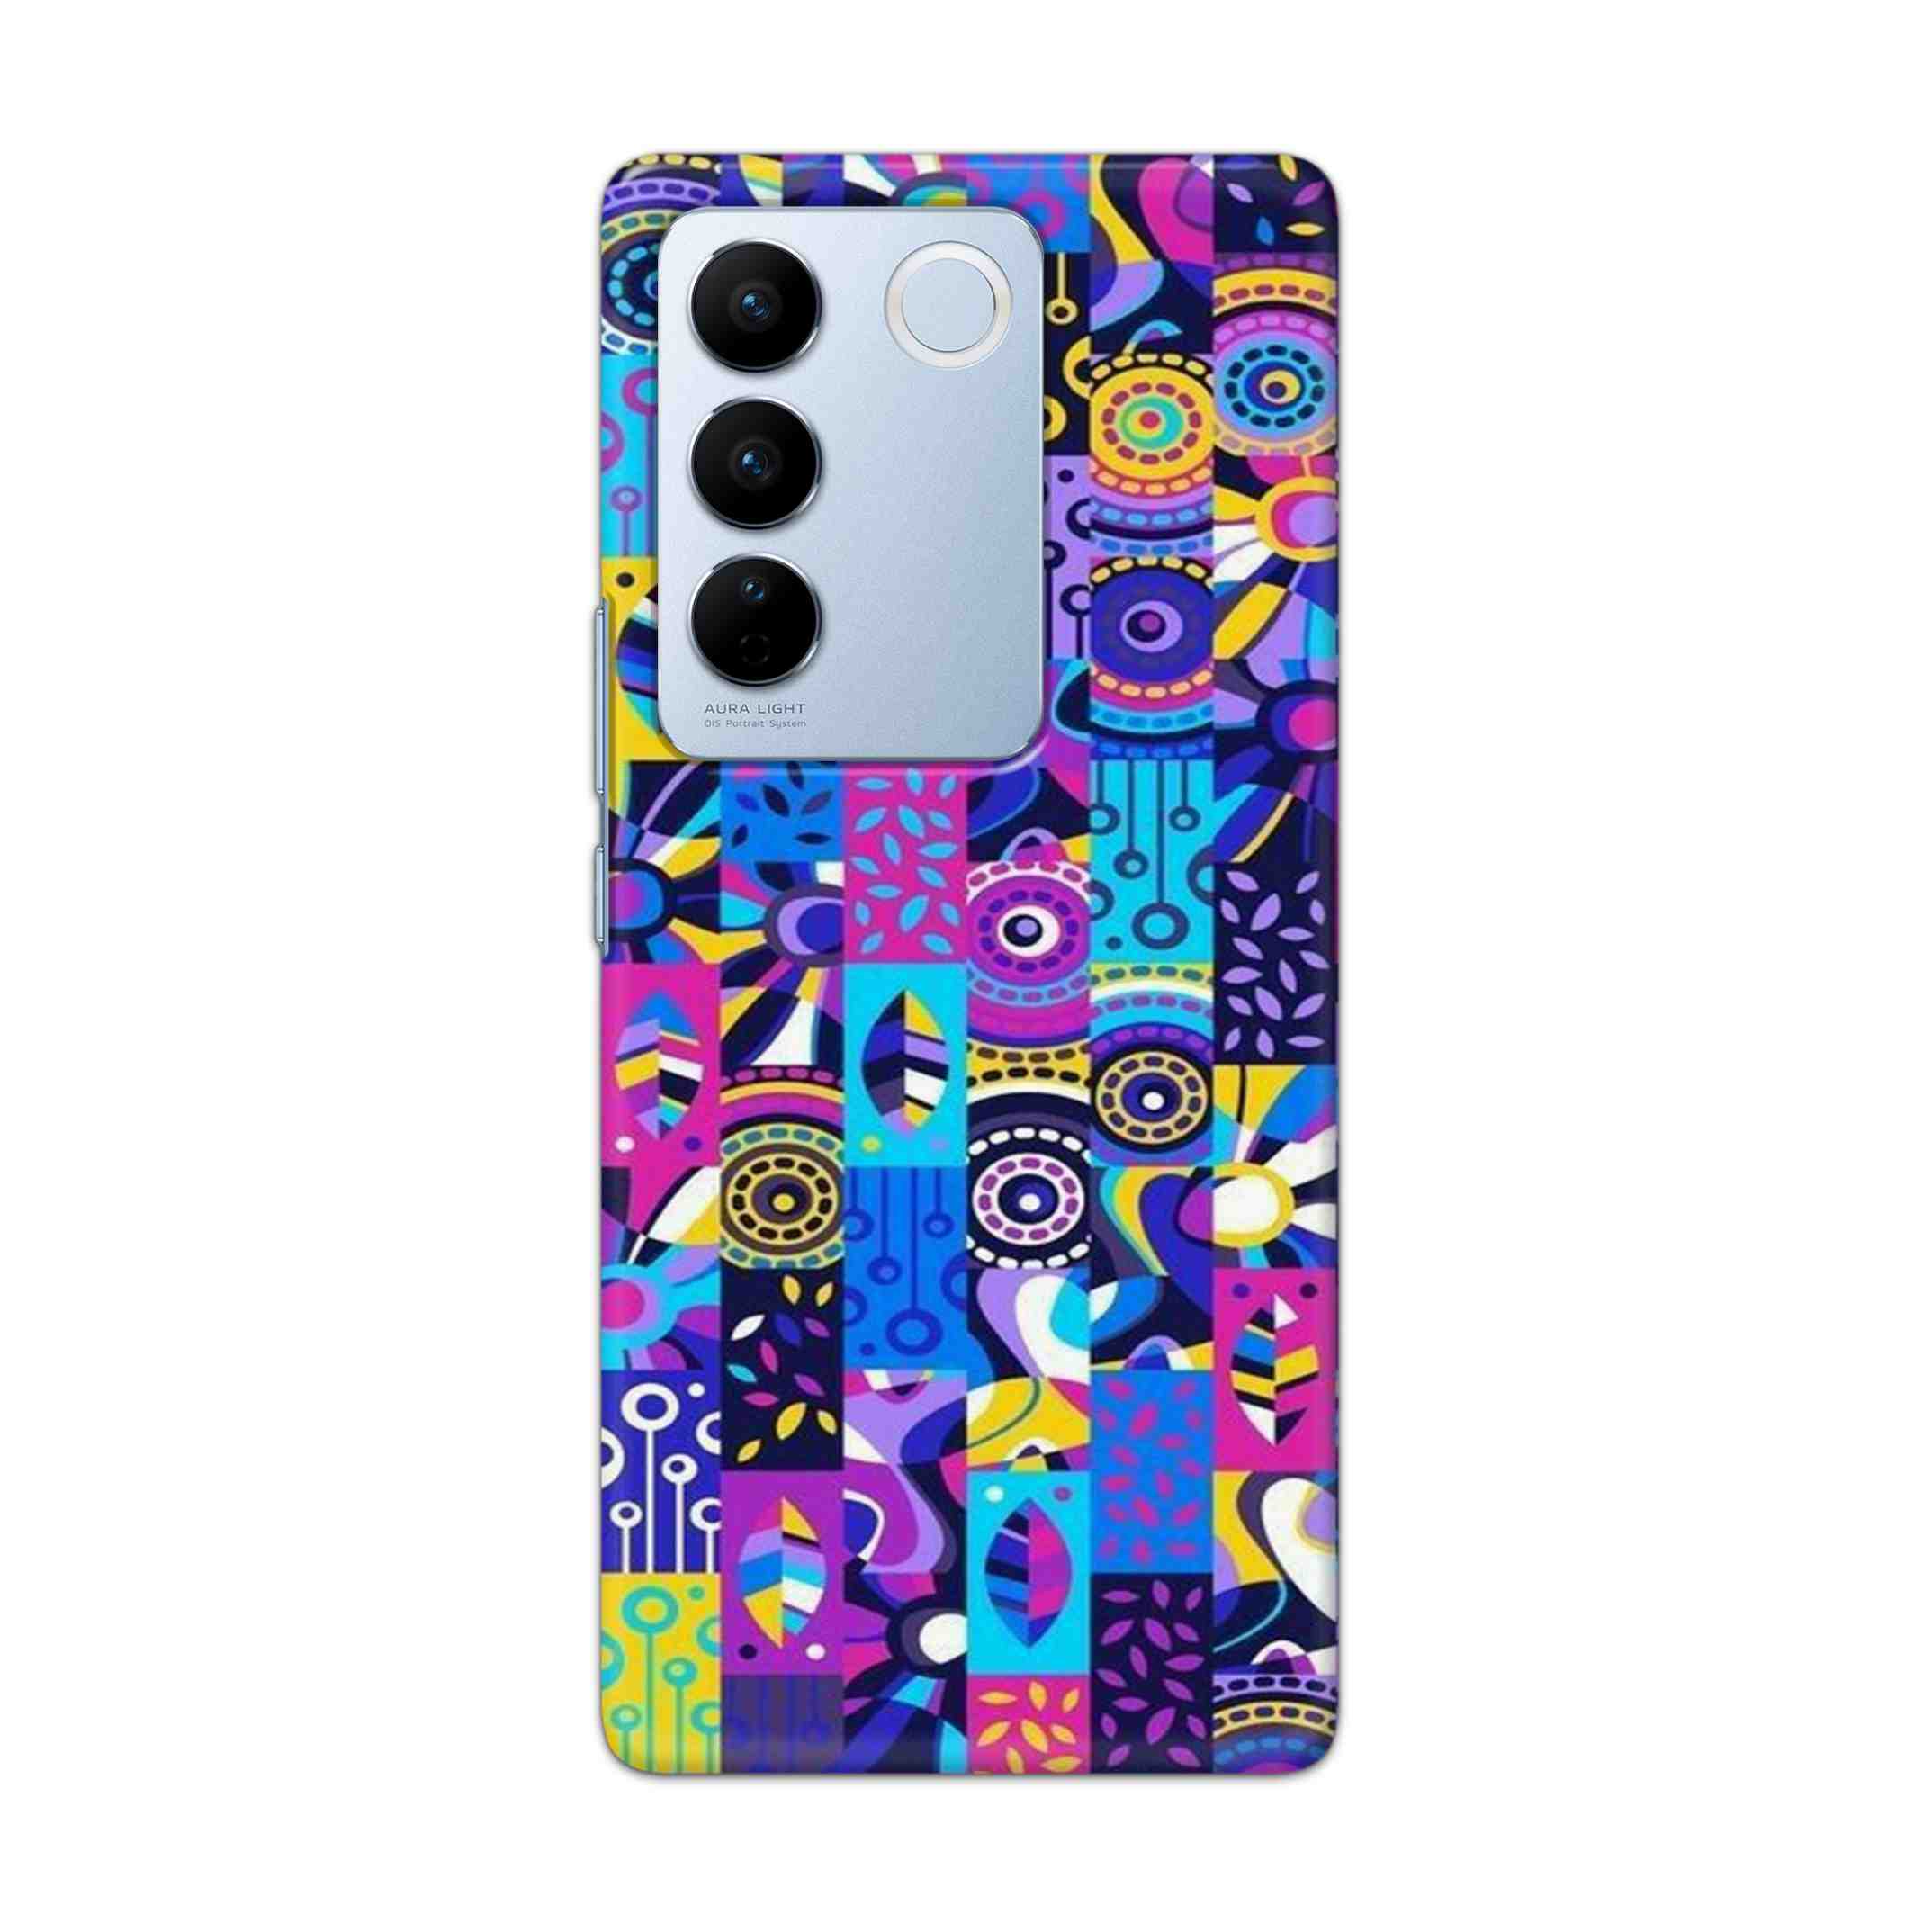 Buy Rainbow Art Hard Back Mobile Phone Case Cover For Vivo V27 Online